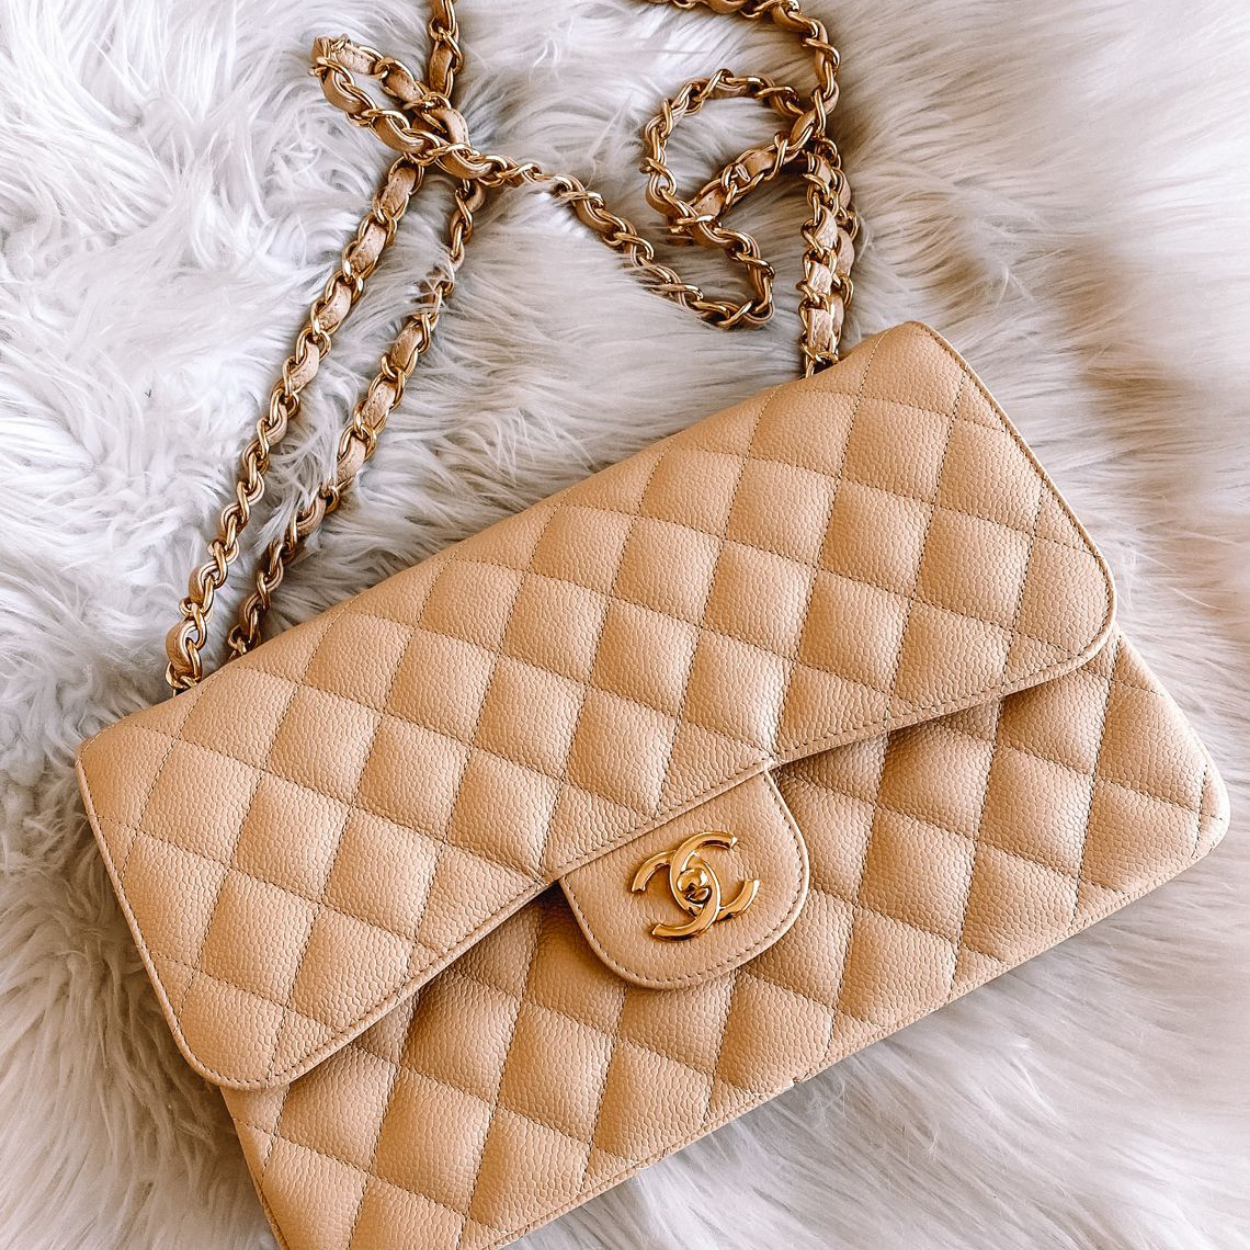 A Chanel Flap Bag é uma das bolsas mais falsificadas no mundo